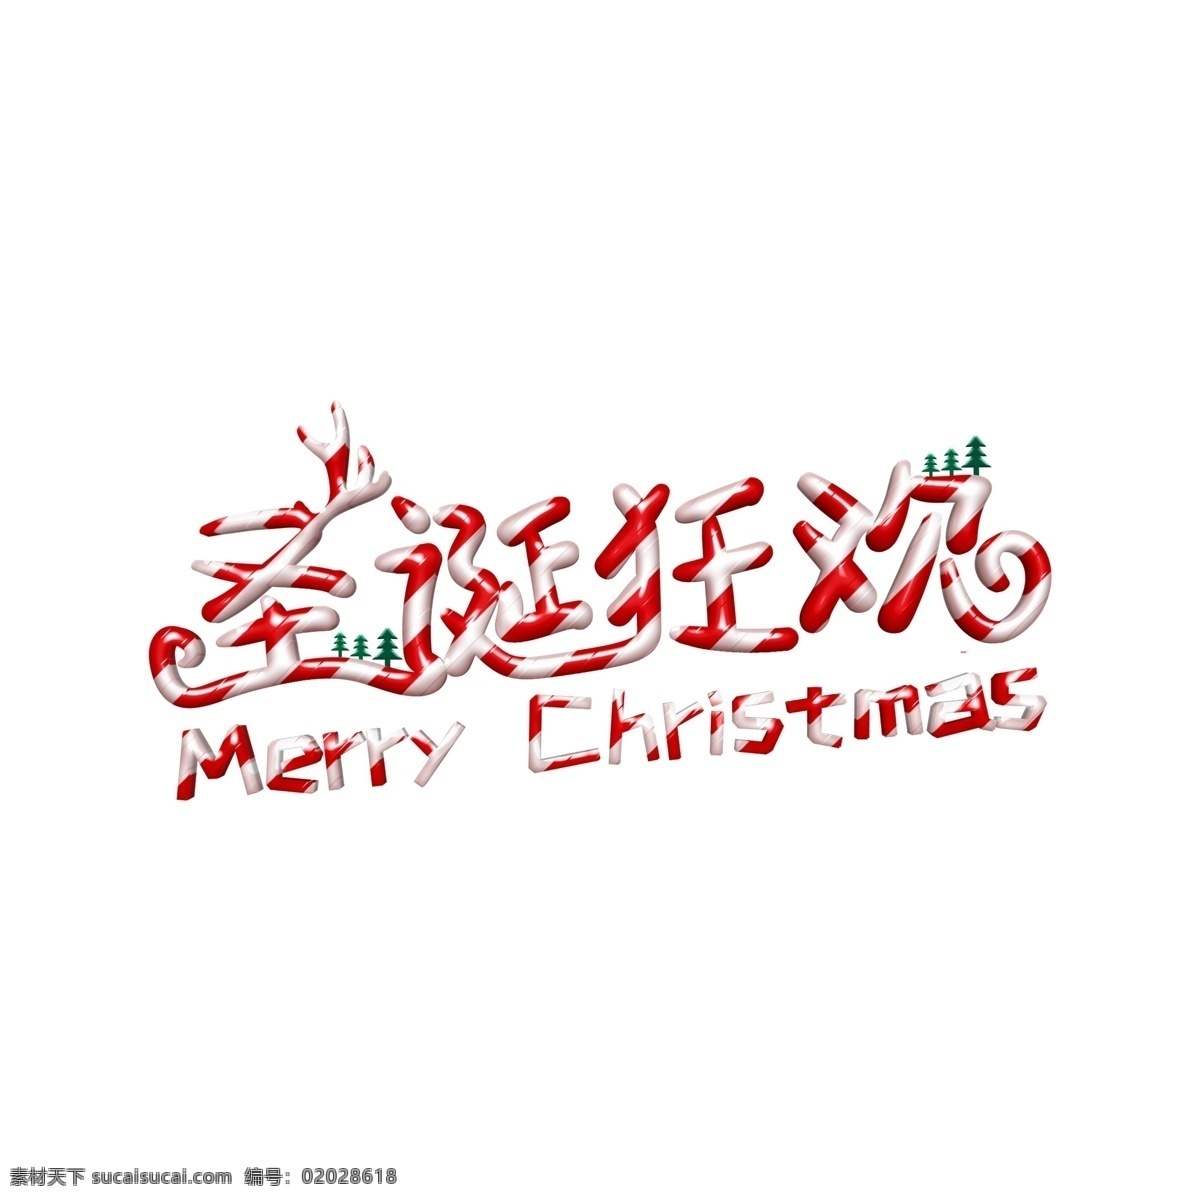 红 白 立体 效果 圣诞 狂欢 节日 促销 艺术 字体 圣诞节 圣诞促销 字体设计 立体字 圣诞狂欢 艺术字